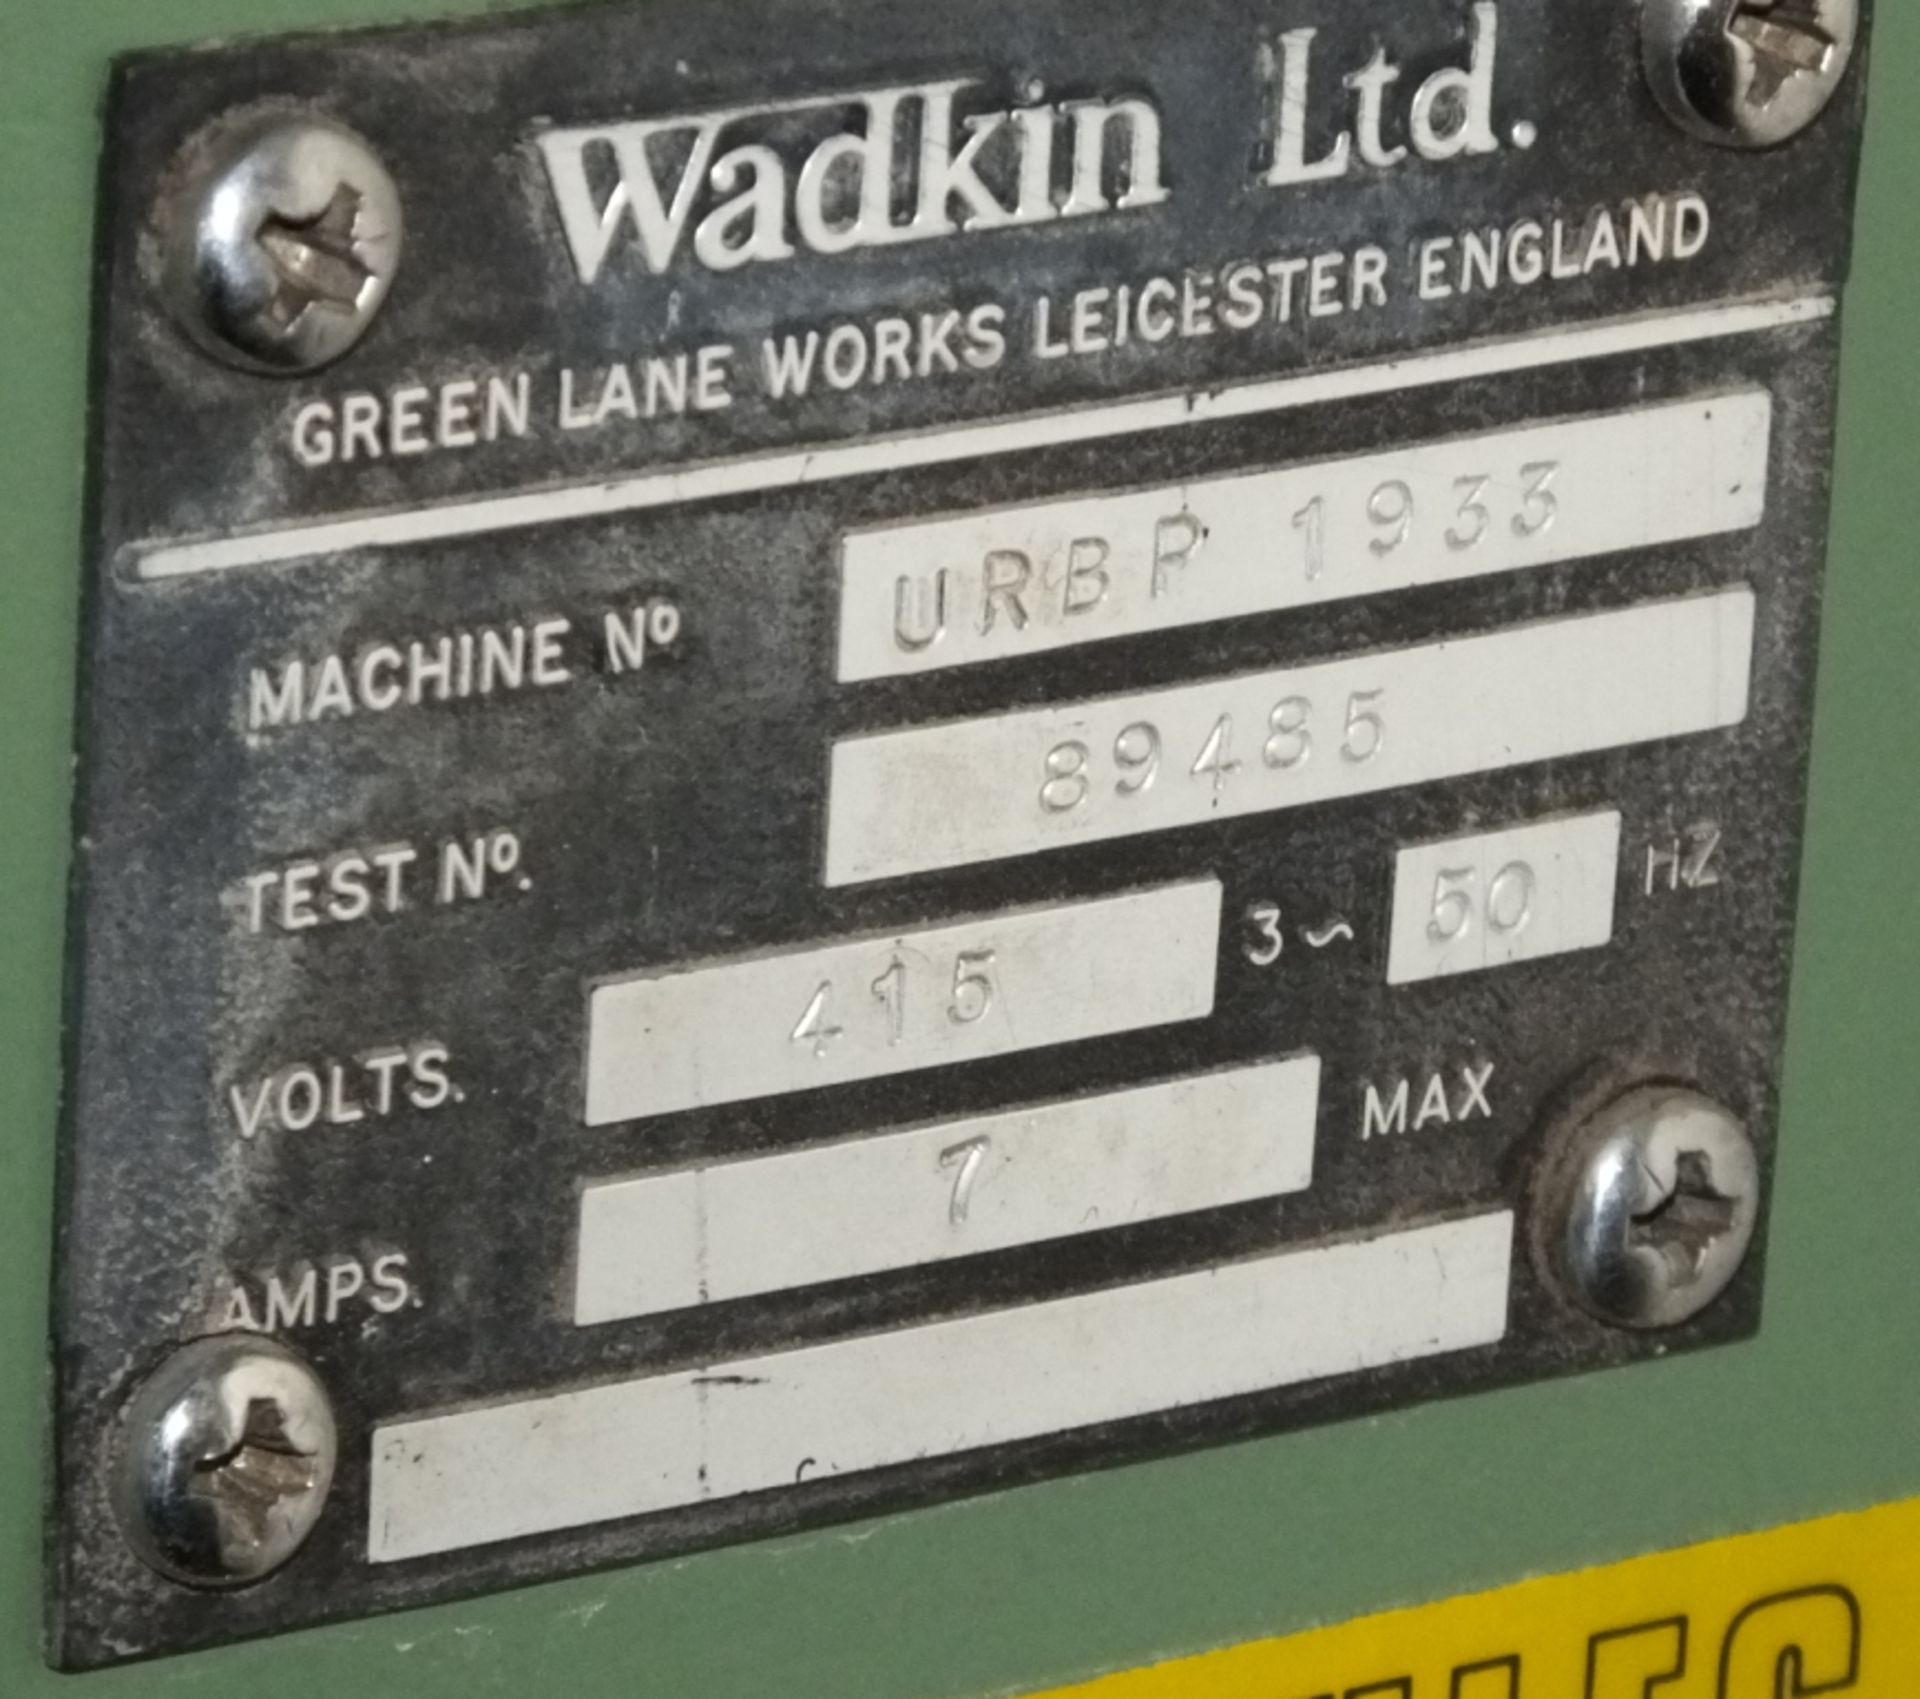 Wadkin Router URBP 1955 - Bild 7 aus 7